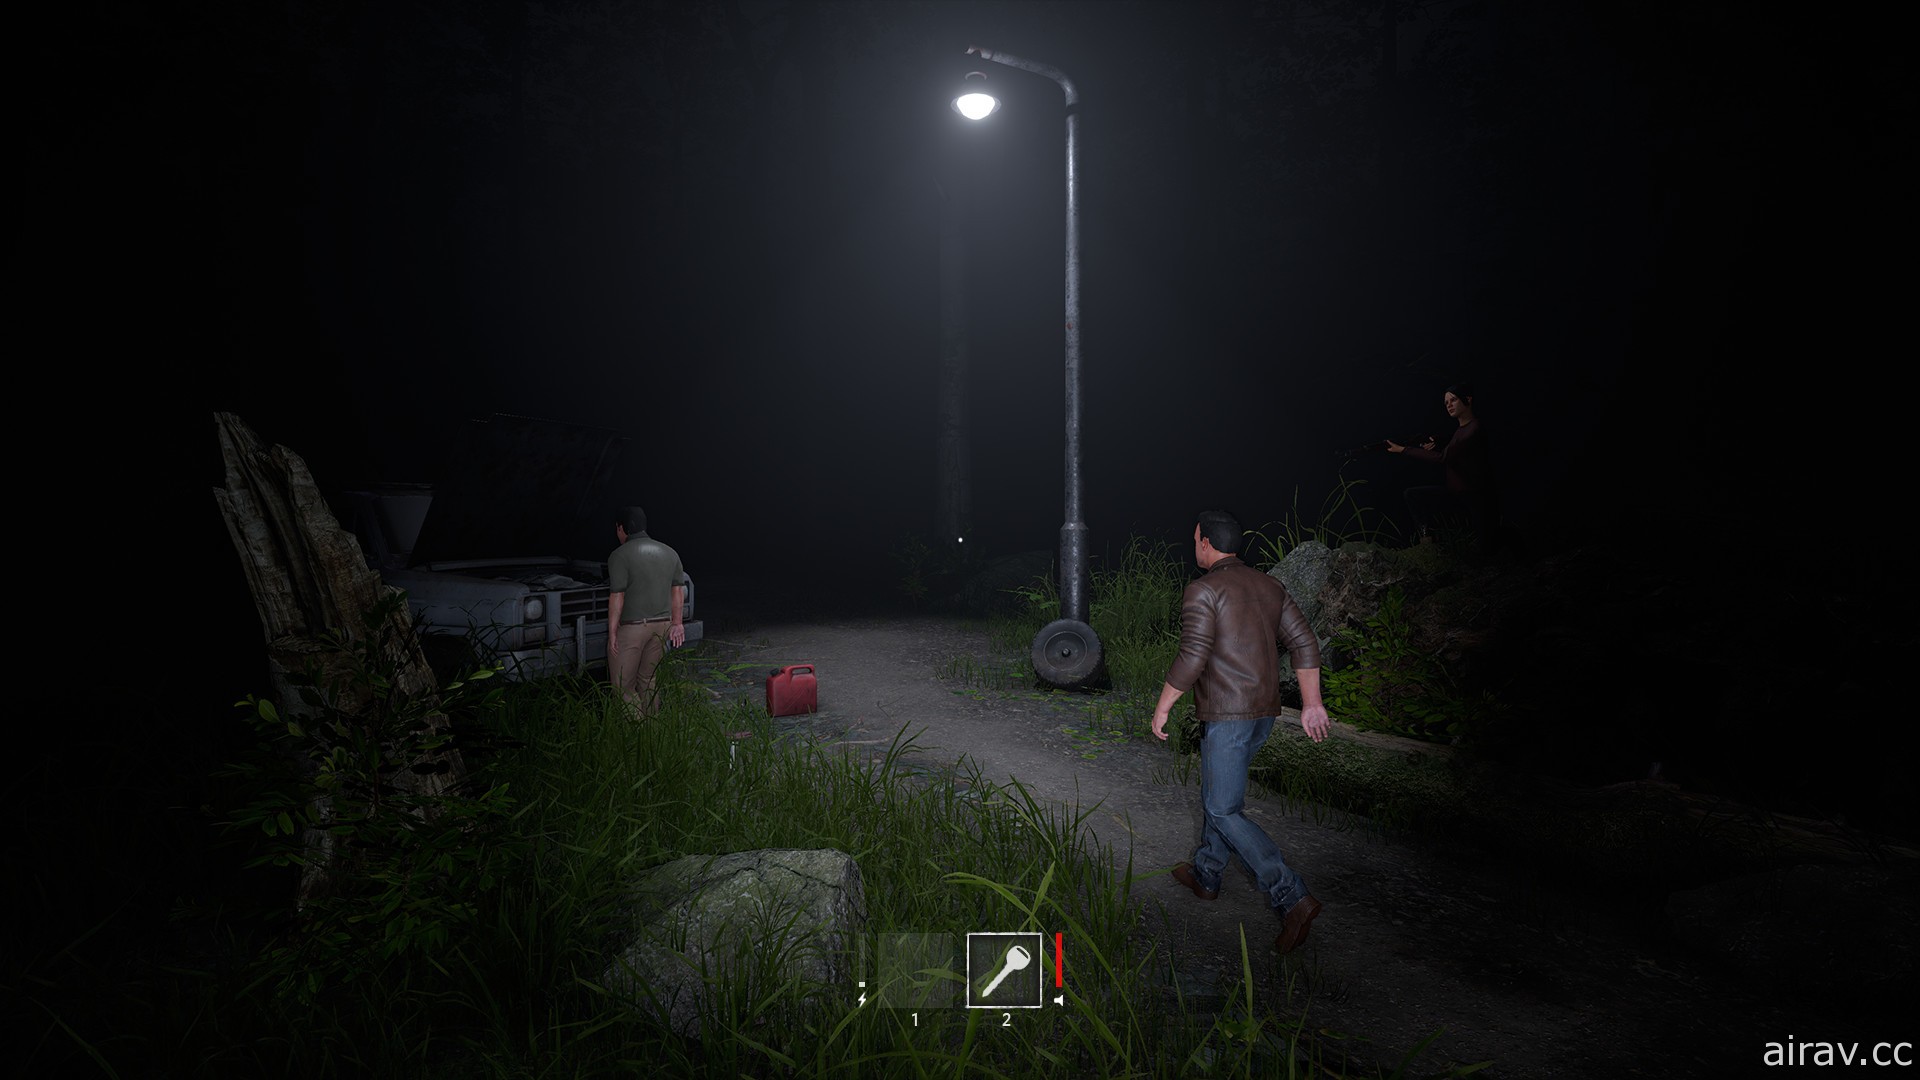 非對稱式恐怖遊戲《In Silence》展開搶先體驗 扮演怪物或倖存者體驗追捕與反擊